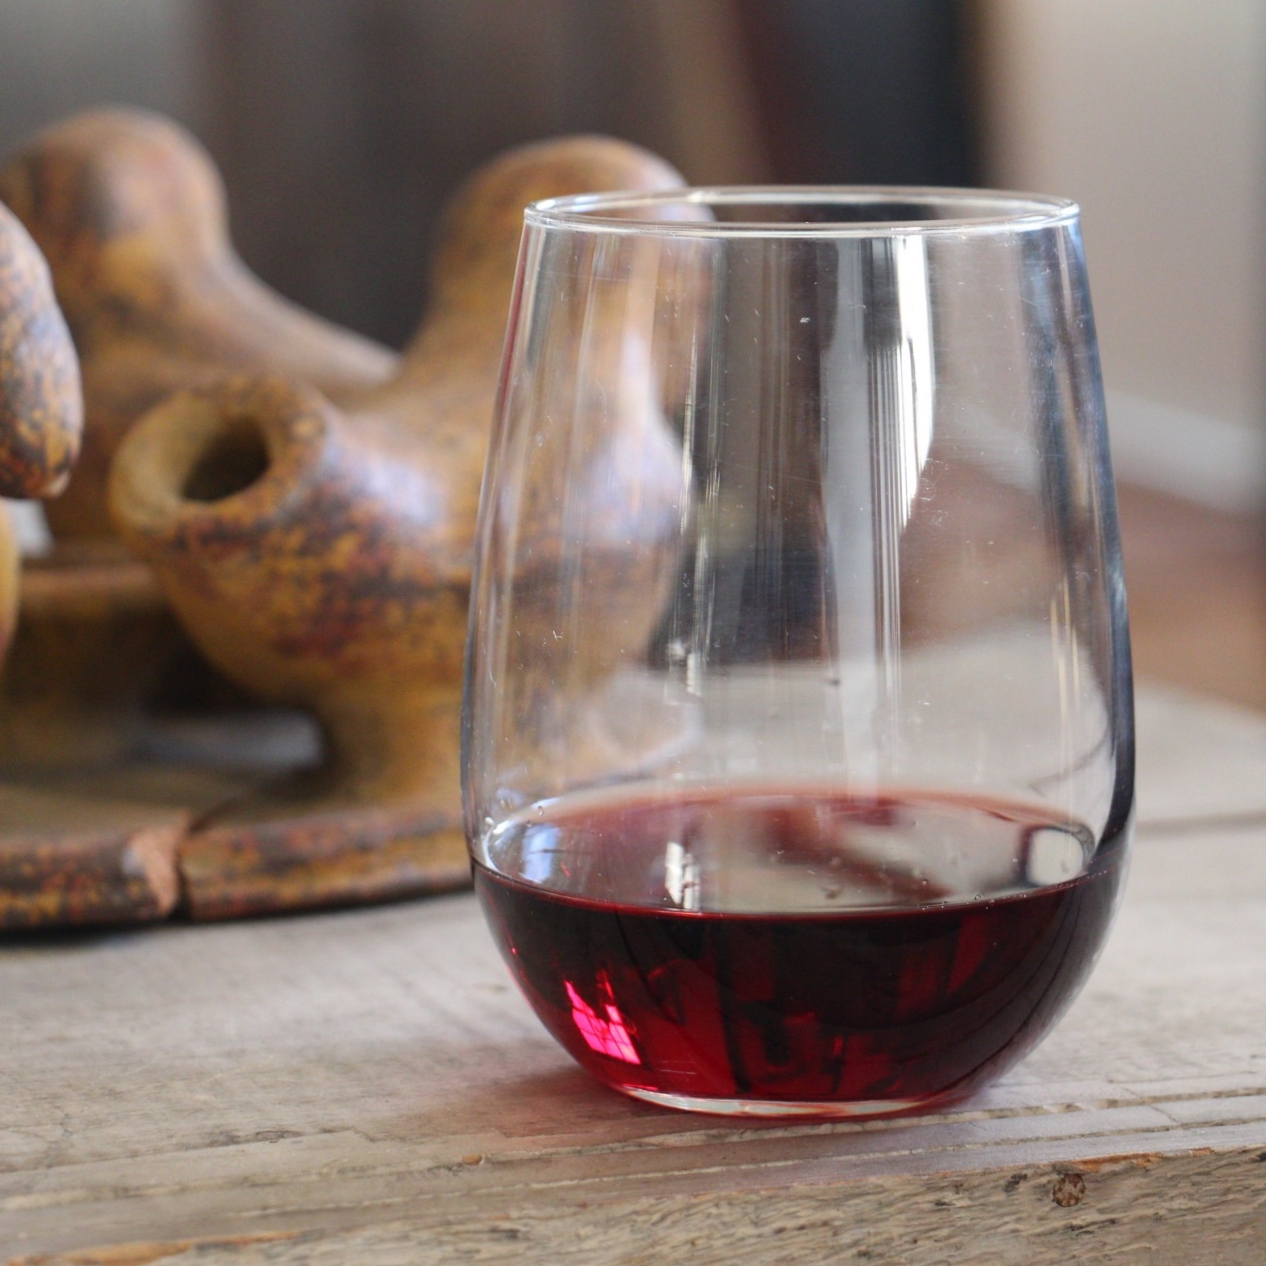 Vineyard Pinot Noir Wine Glass + Reviews